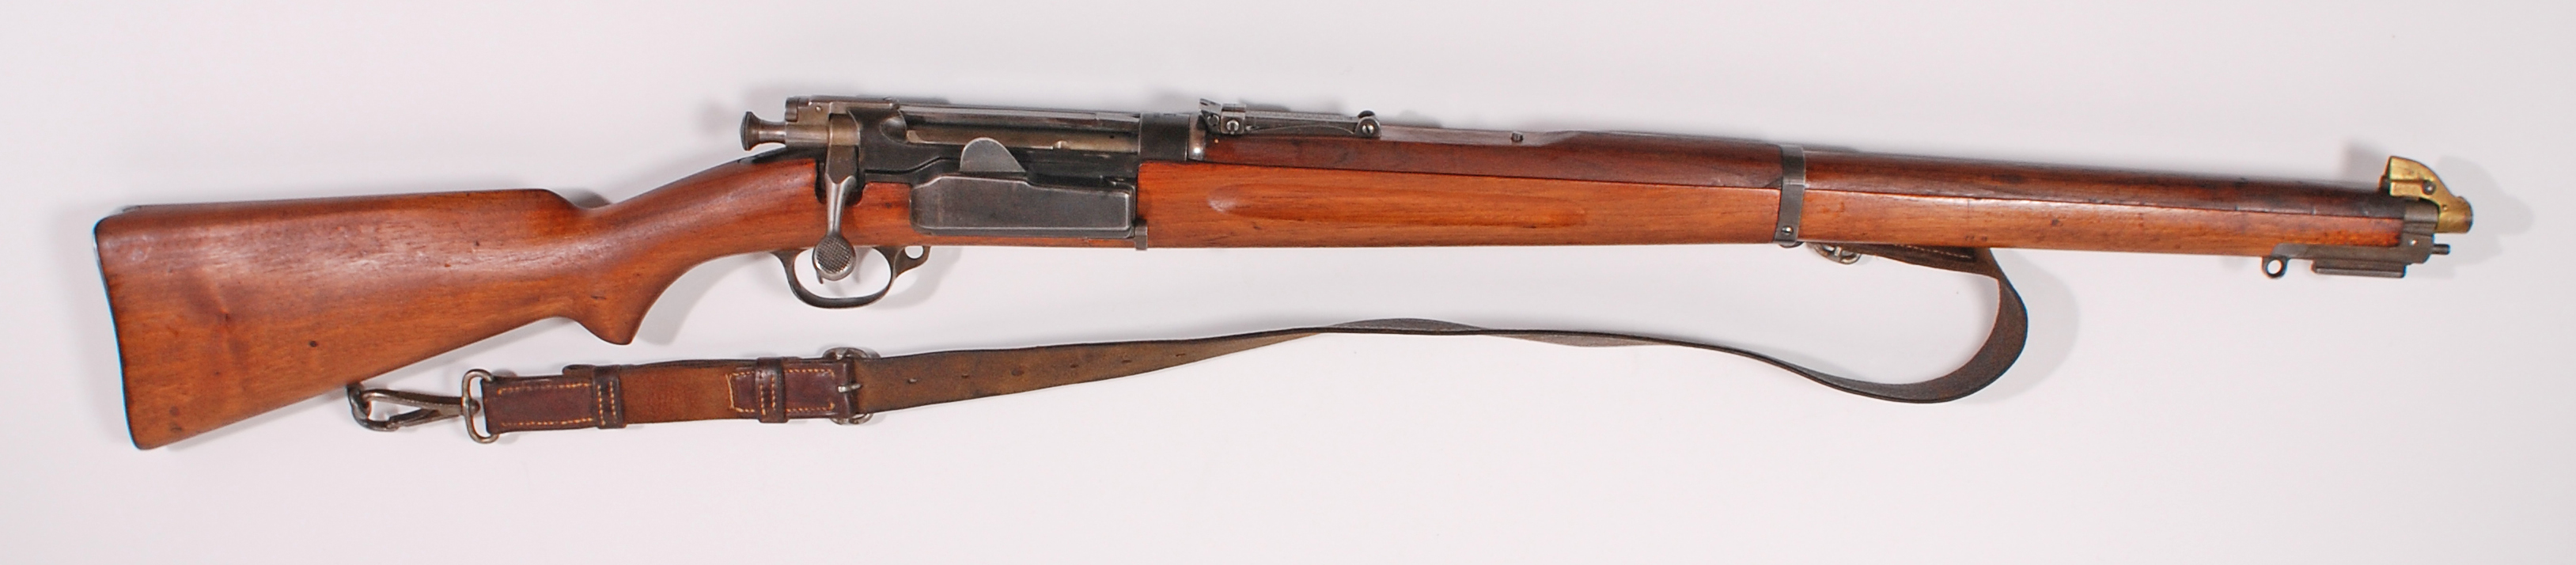 ./guns/rifle/bilder/Rifle-Kongsberg-Krag-M1912-10438-3.jpg